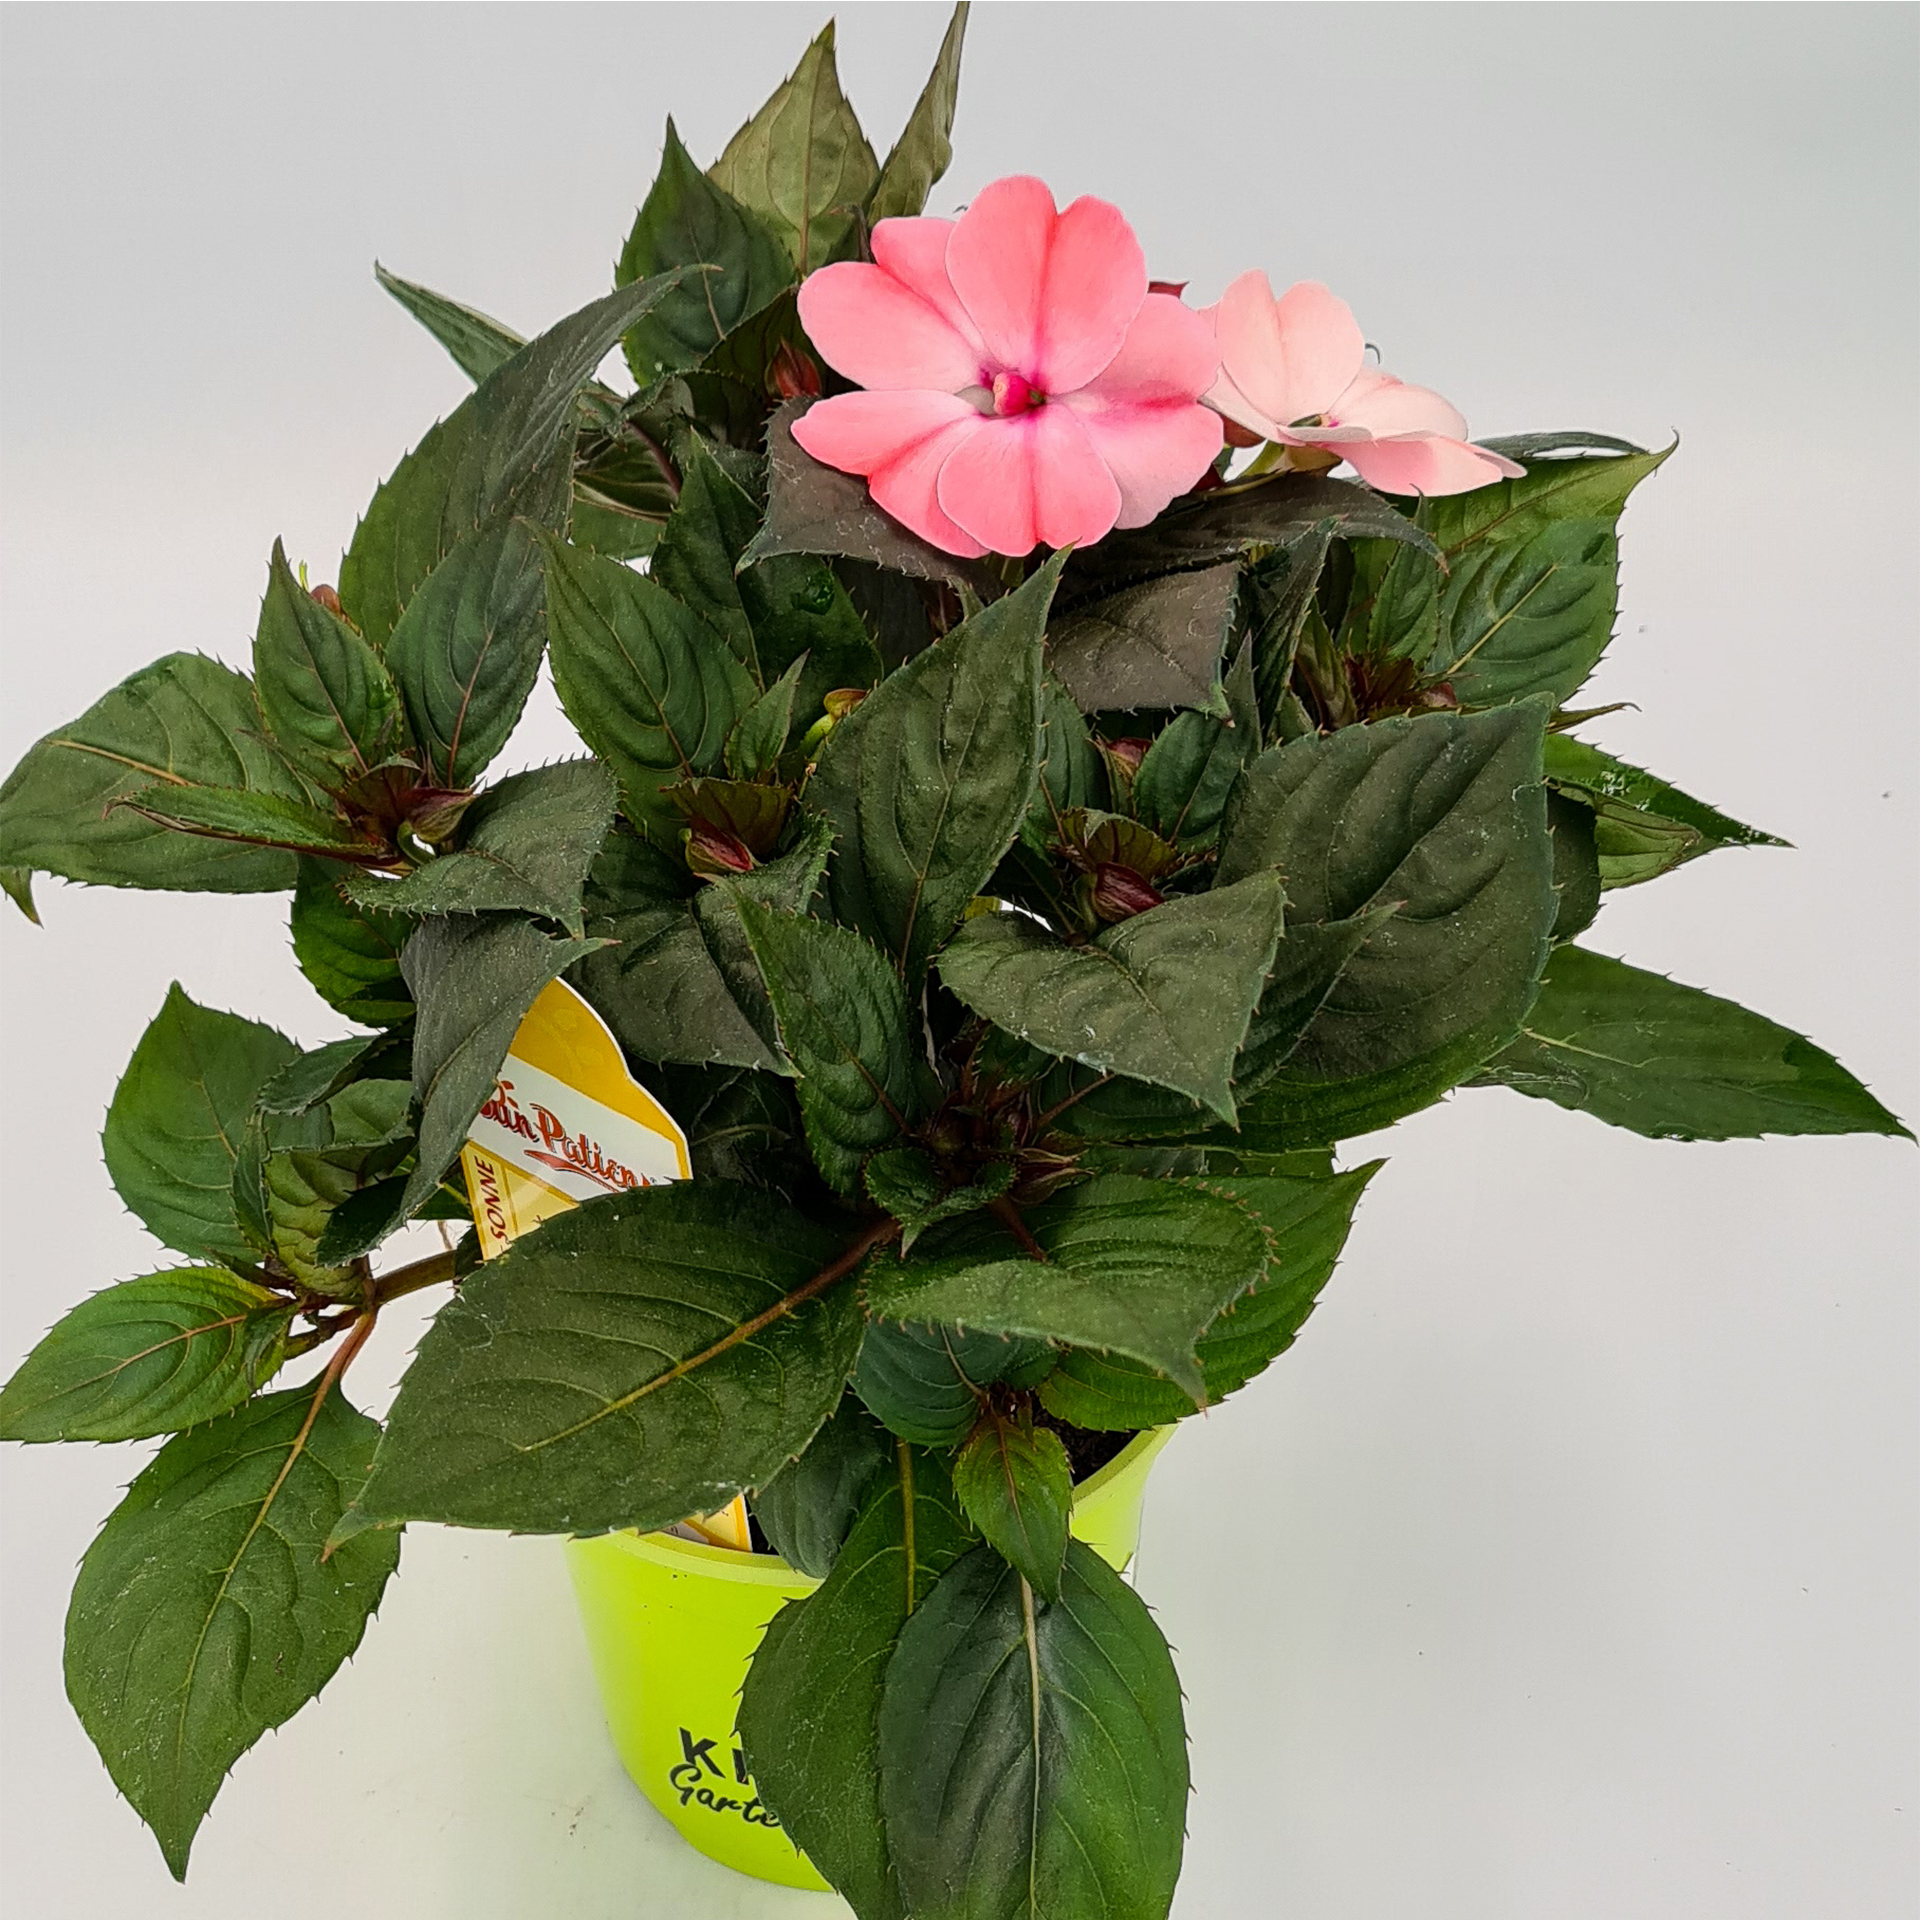 Edellieschen - Sunpatiens compact 'Blush Pink', 12cm Topf 